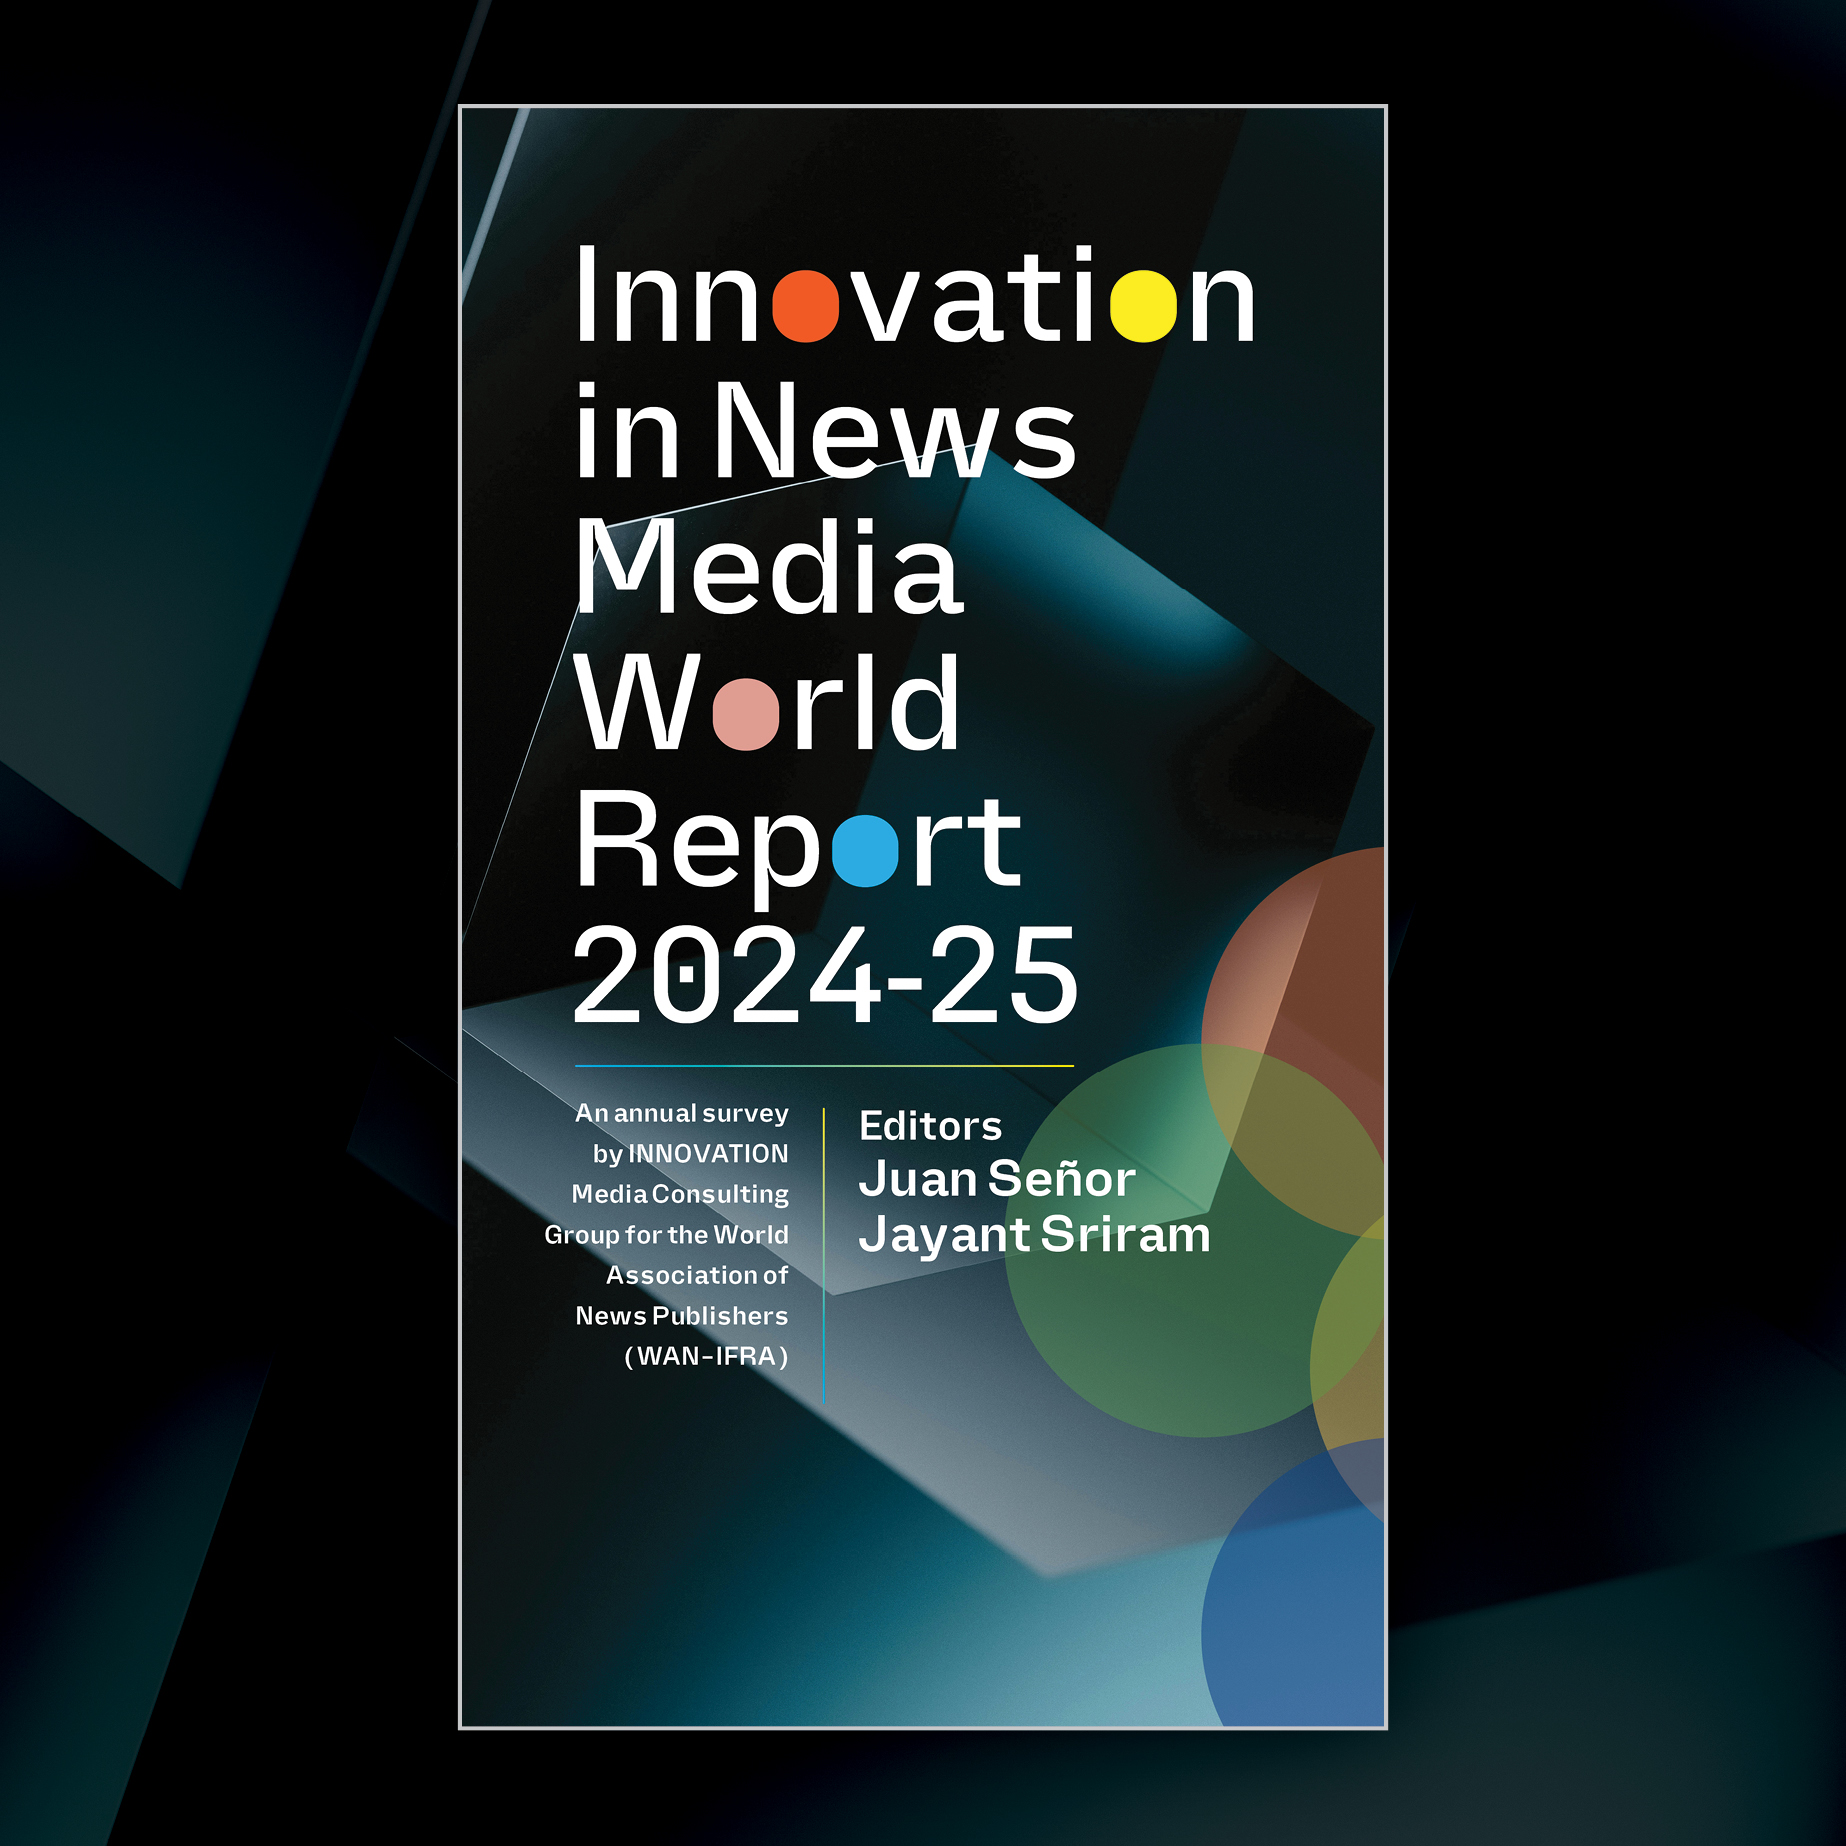 INNOVATION IN NEWS MEDIA 2024-25 WORLD REPORT